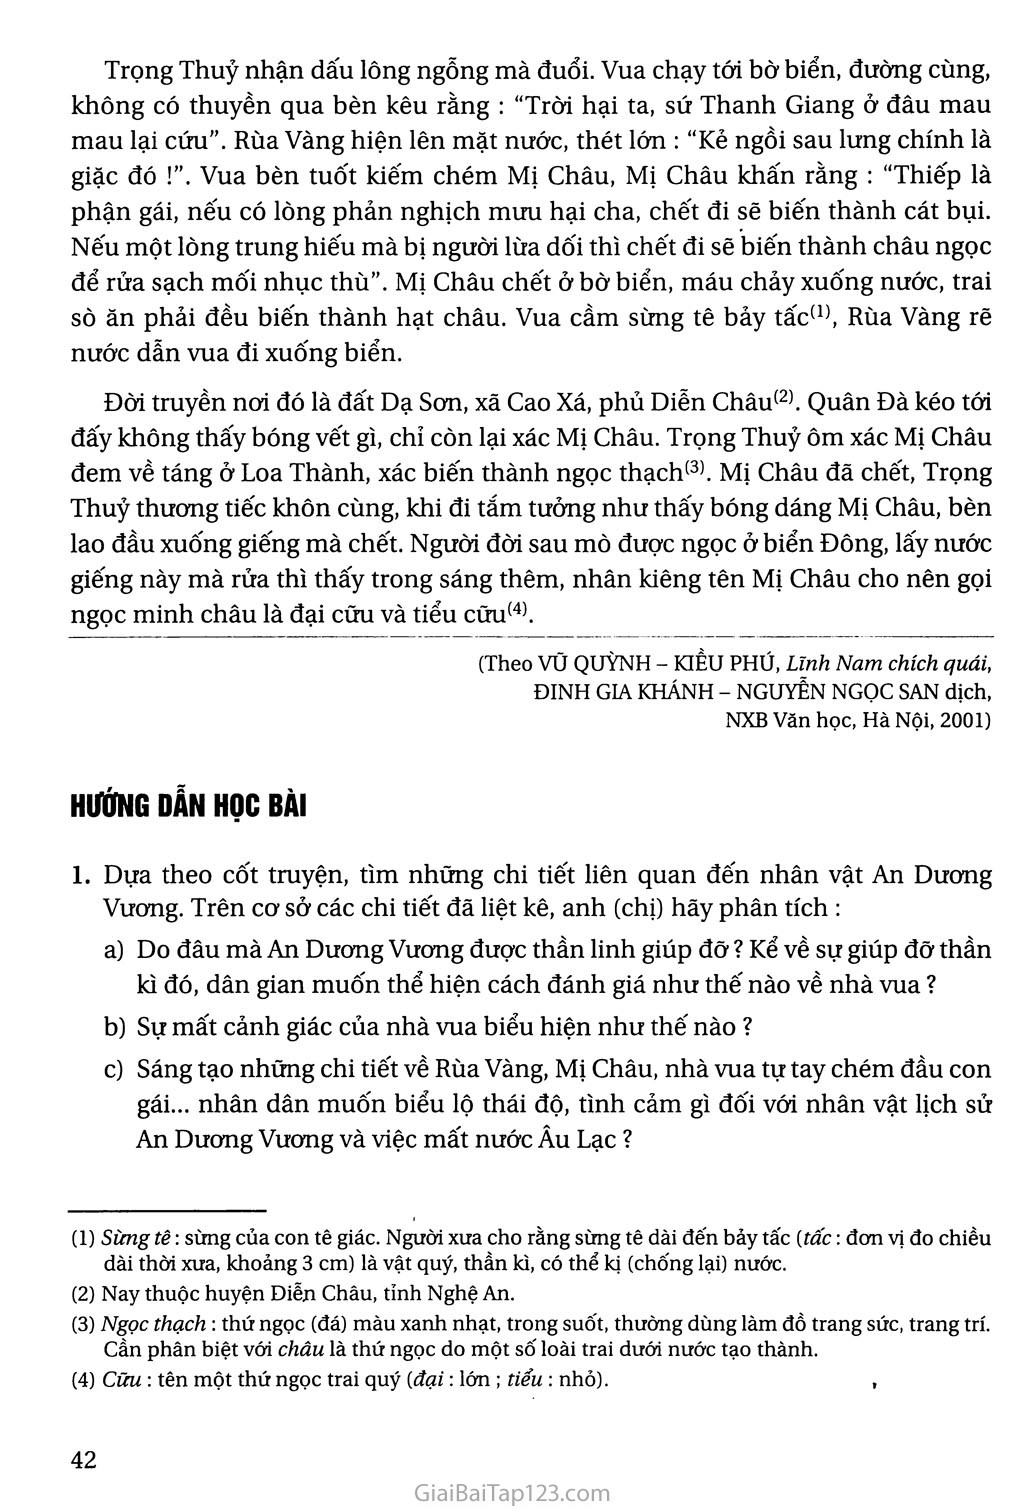 Truyện An Dương Vương và Mị Châu - Trọng Thủy trang 4